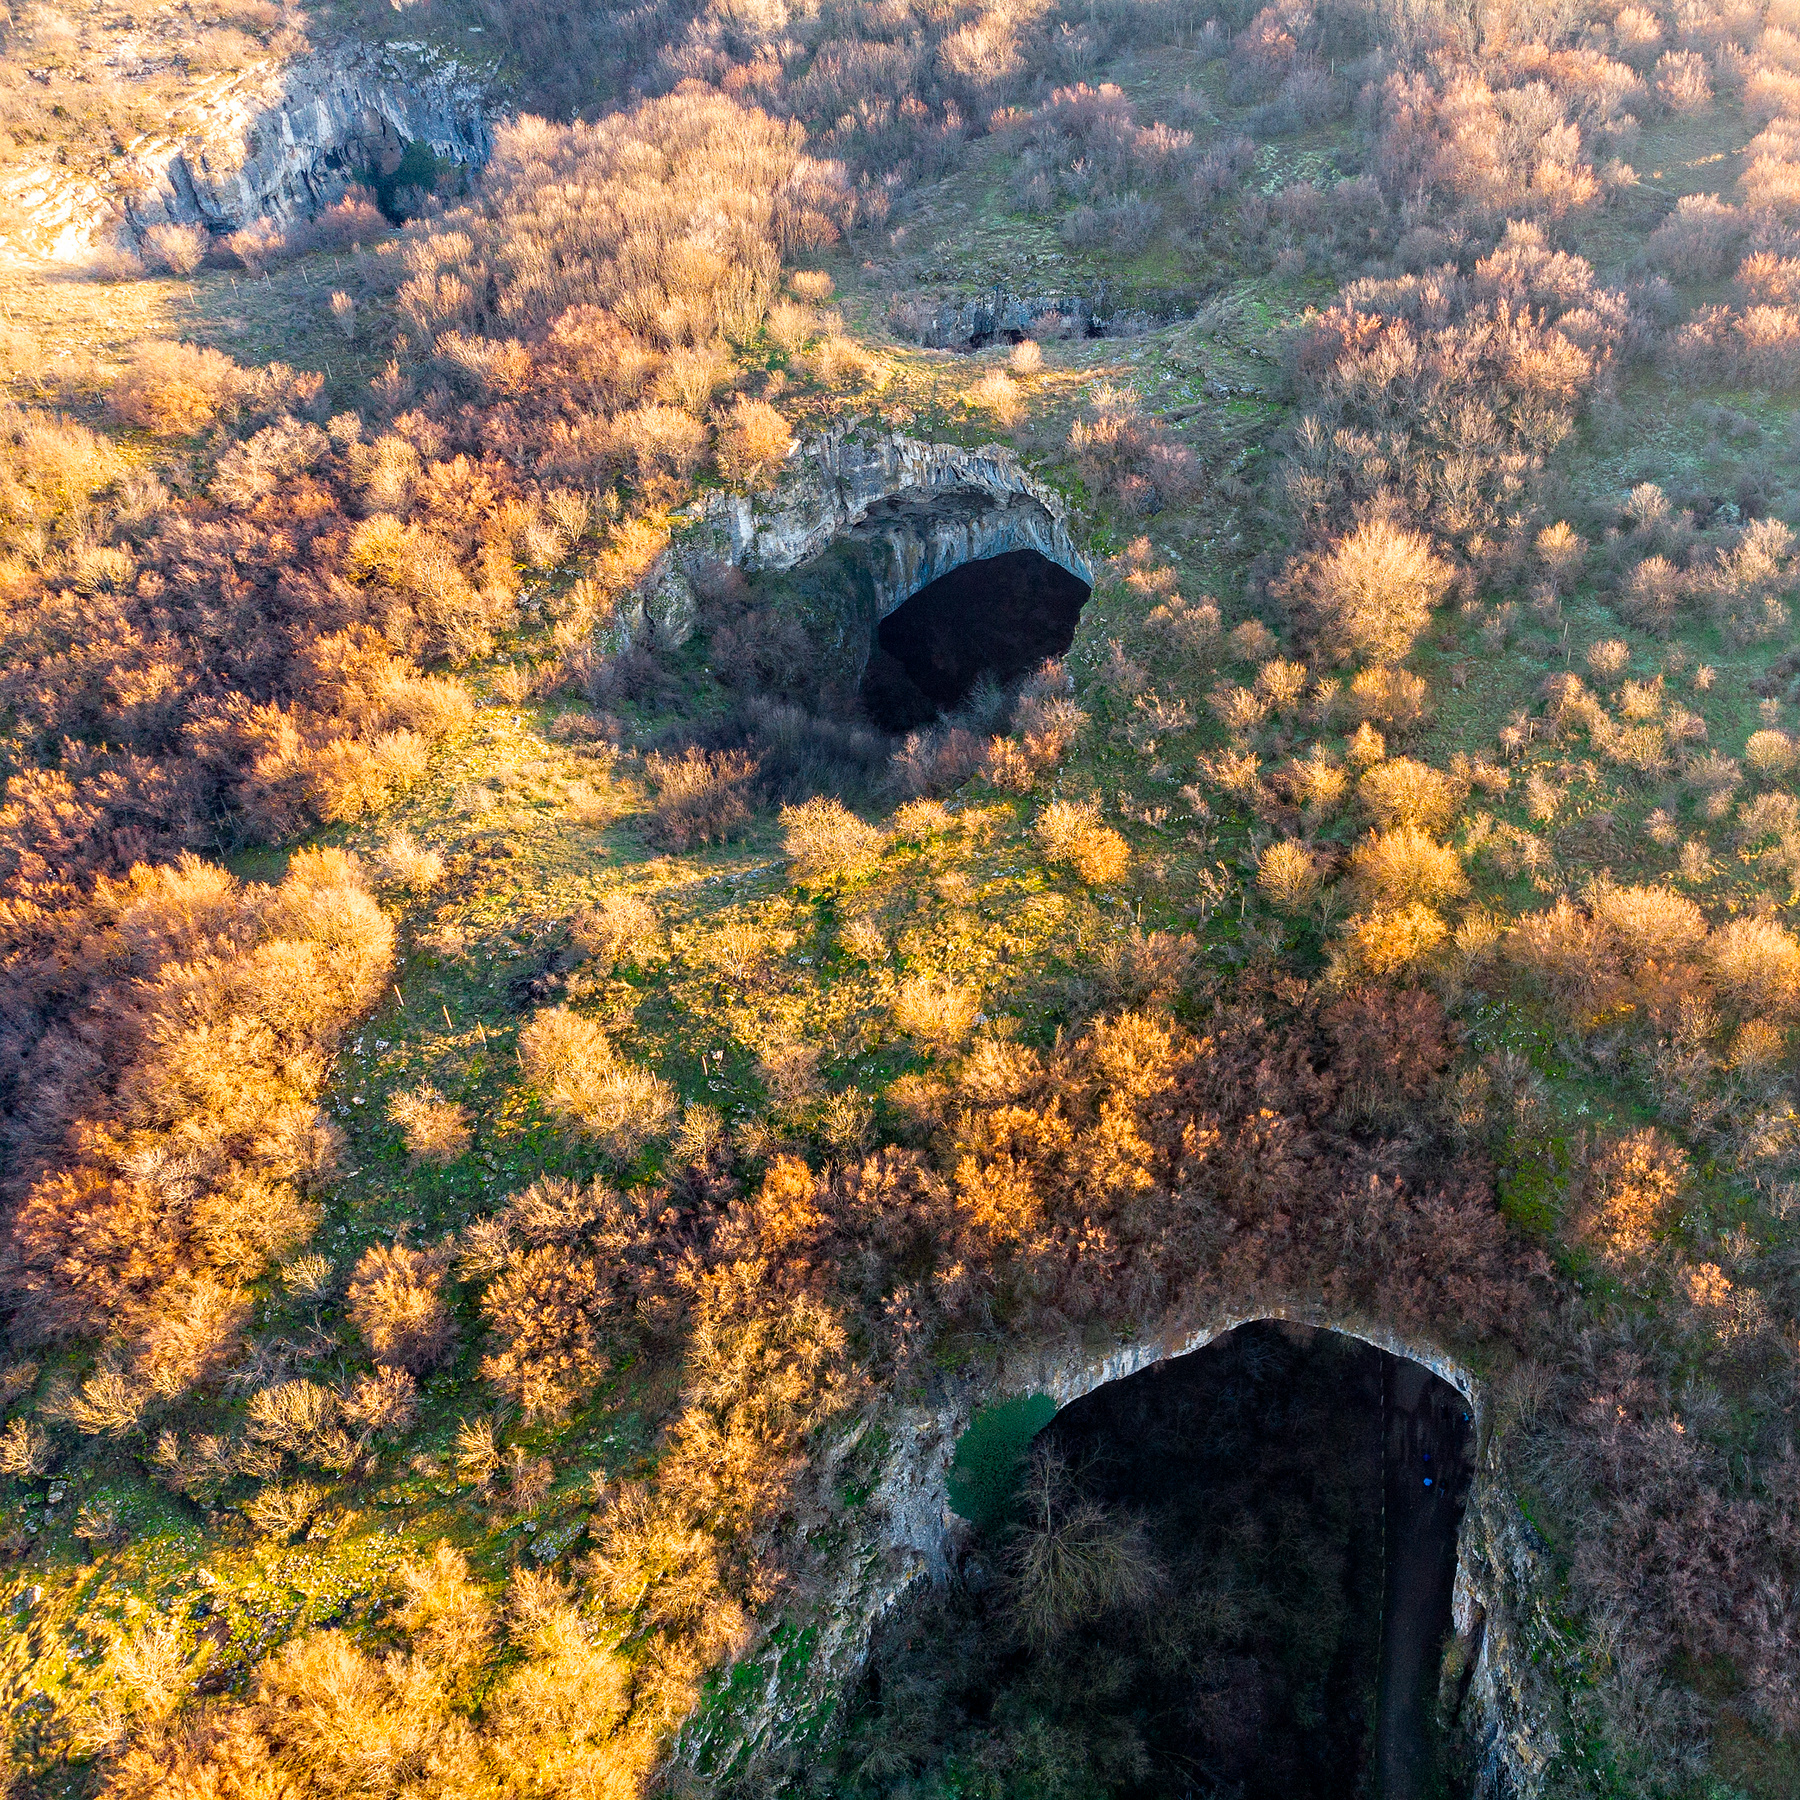 Пещера Деветашка 